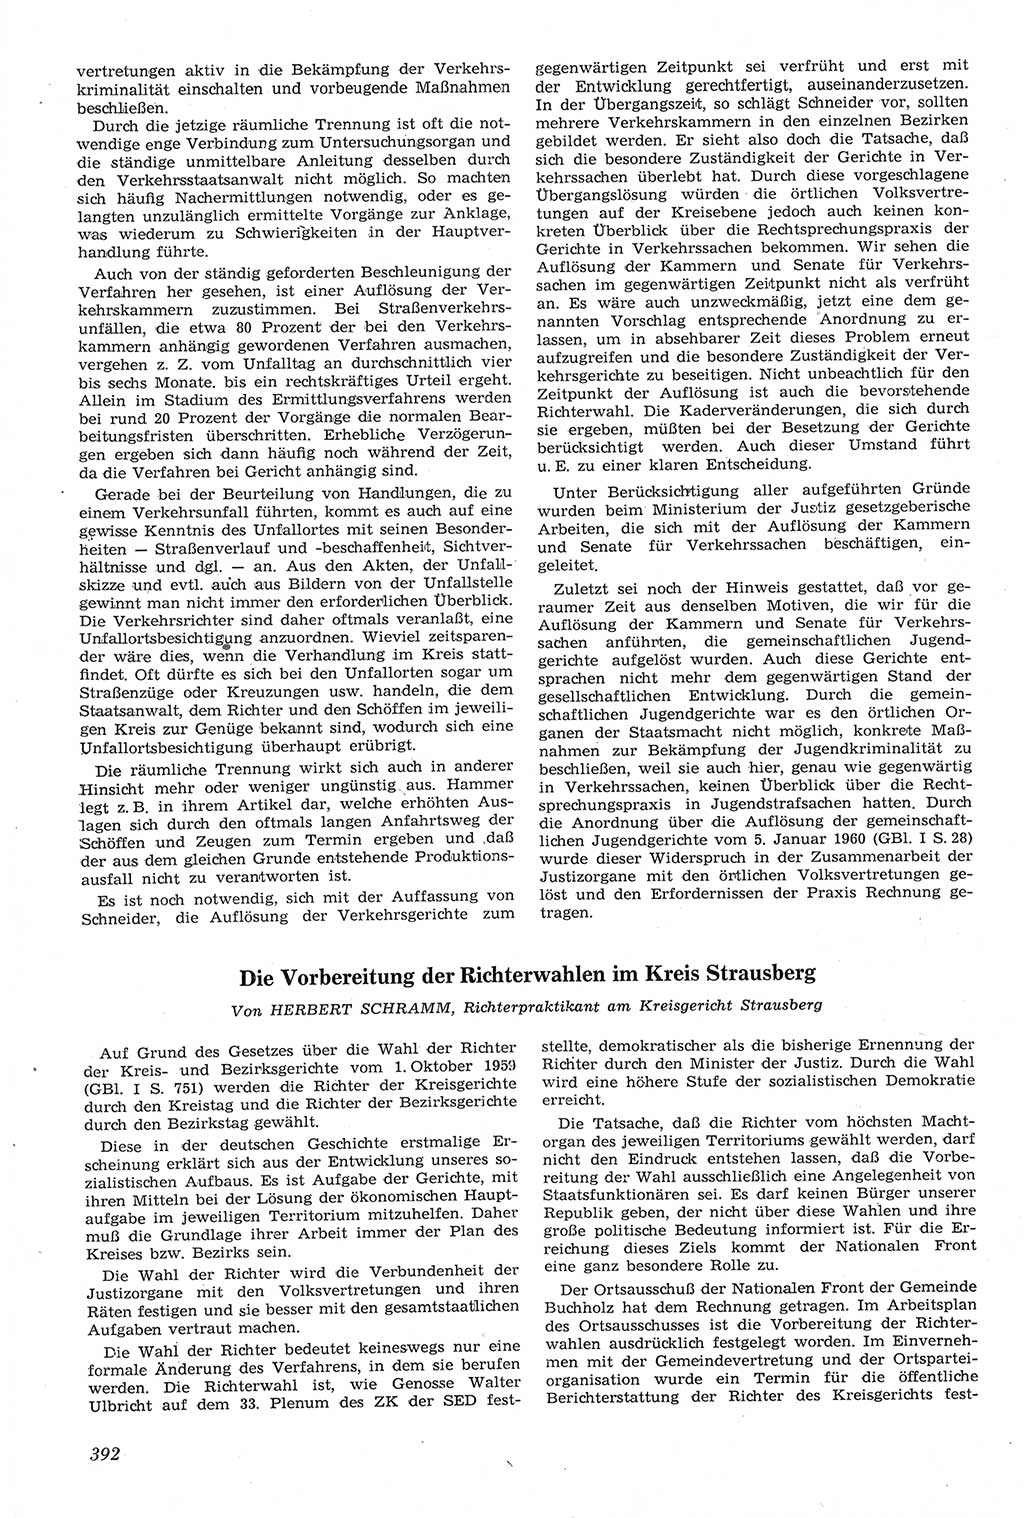 Neue Justiz (NJ), Zeitschrift für Recht und Rechtswissenschaft [Deutsche Demokratische Republik (DDR)], 14. Jahrgang 1960, Seite 392 (NJ DDR 1960, S. 392)